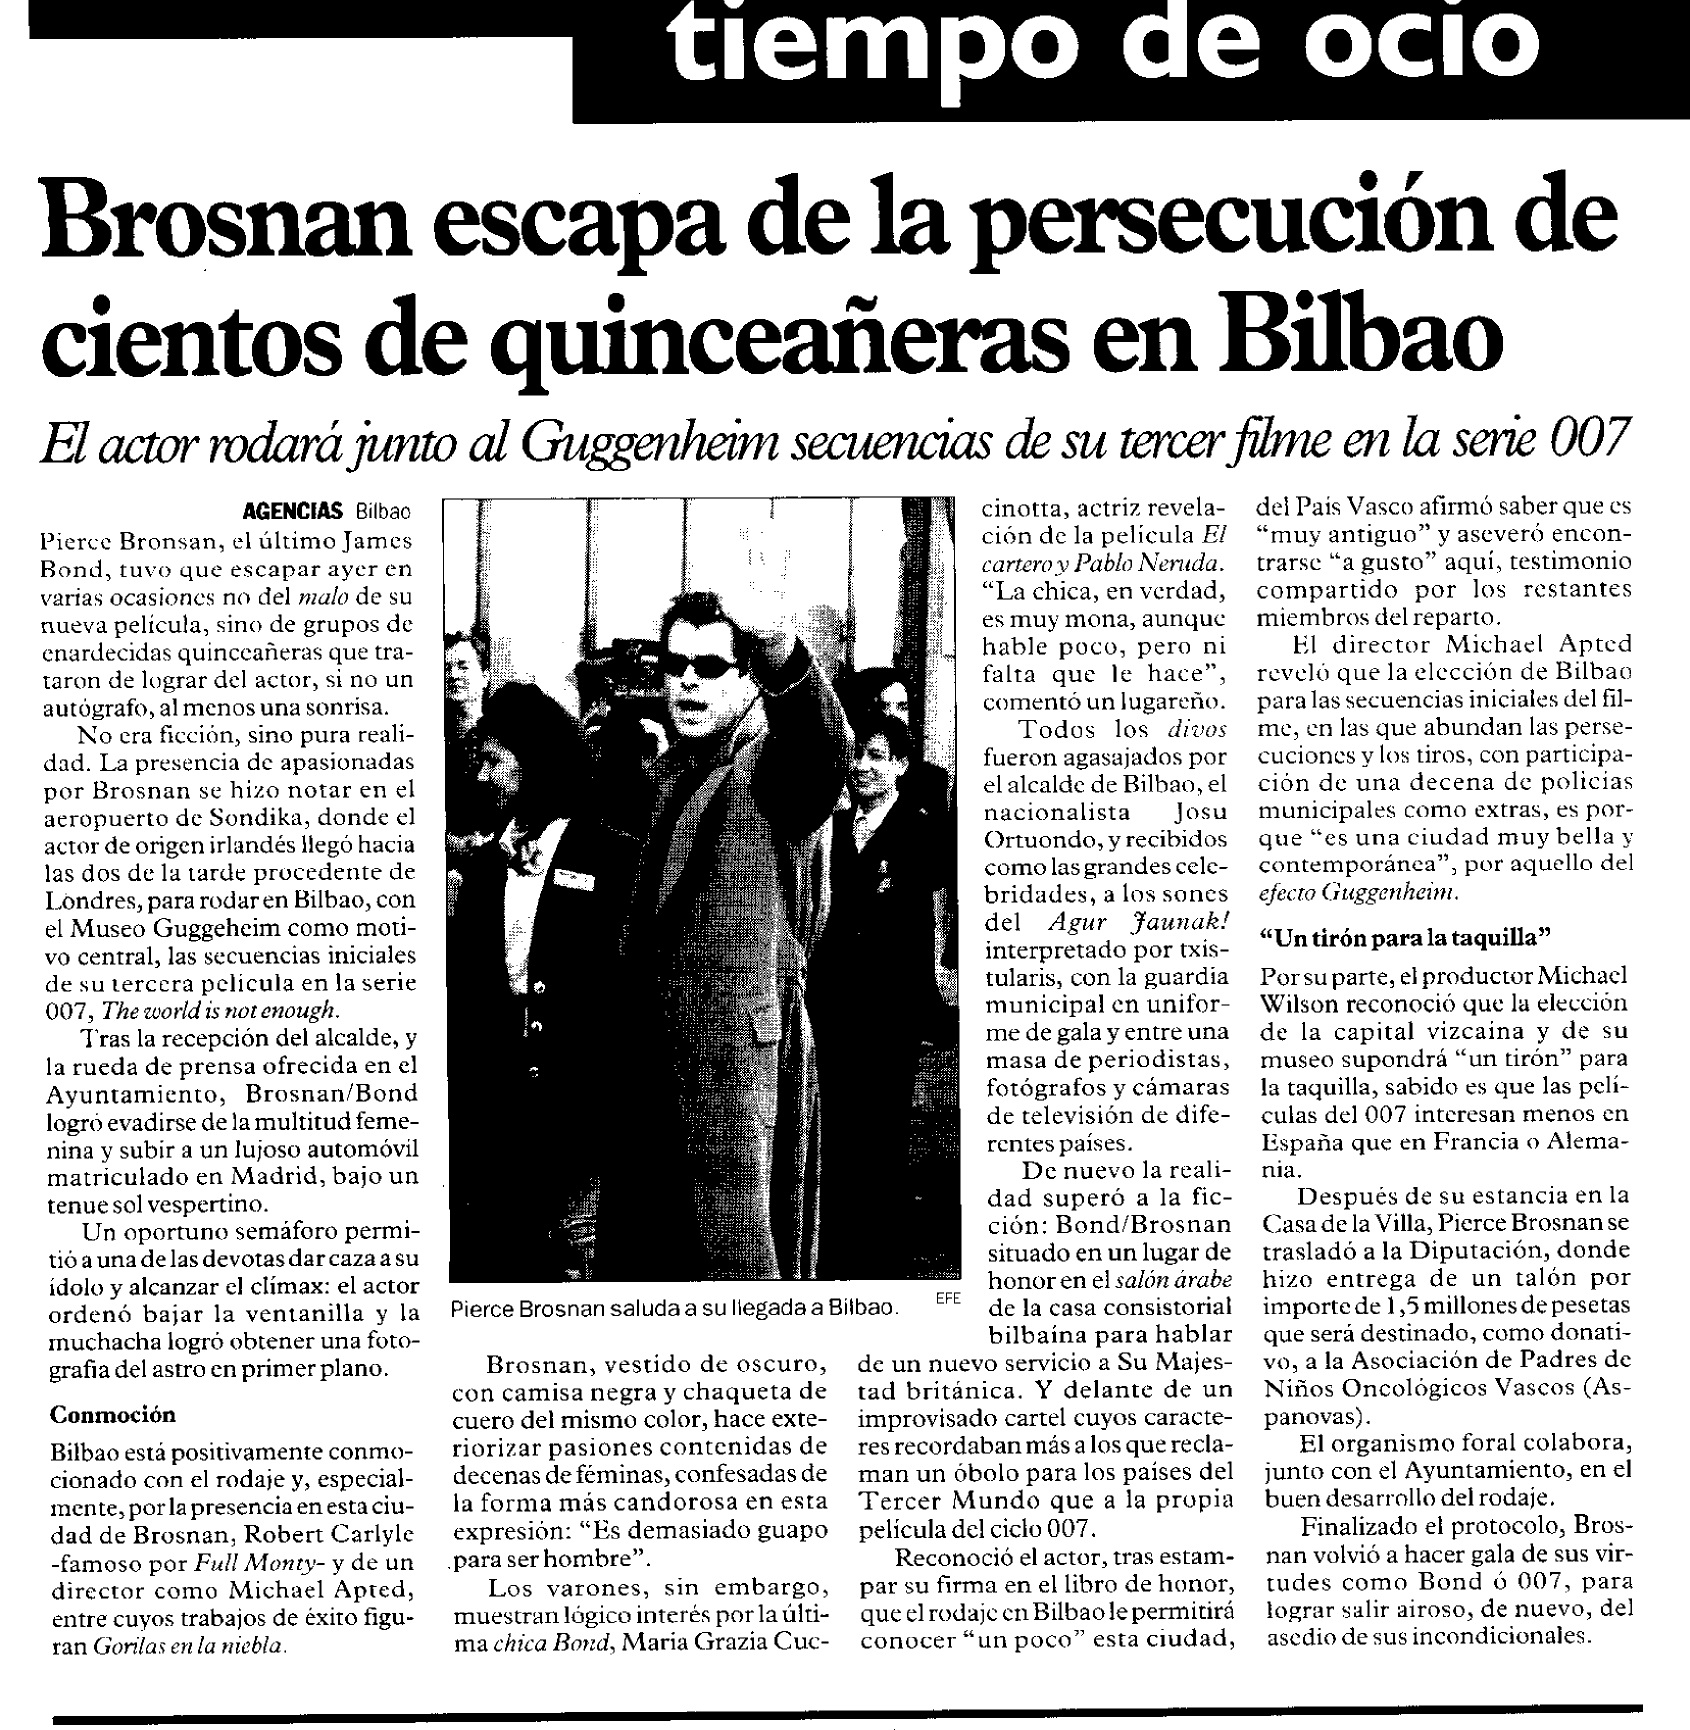 19 1999 02 16 Diario de Noticias Navarra 59 Rodaje Bilbao